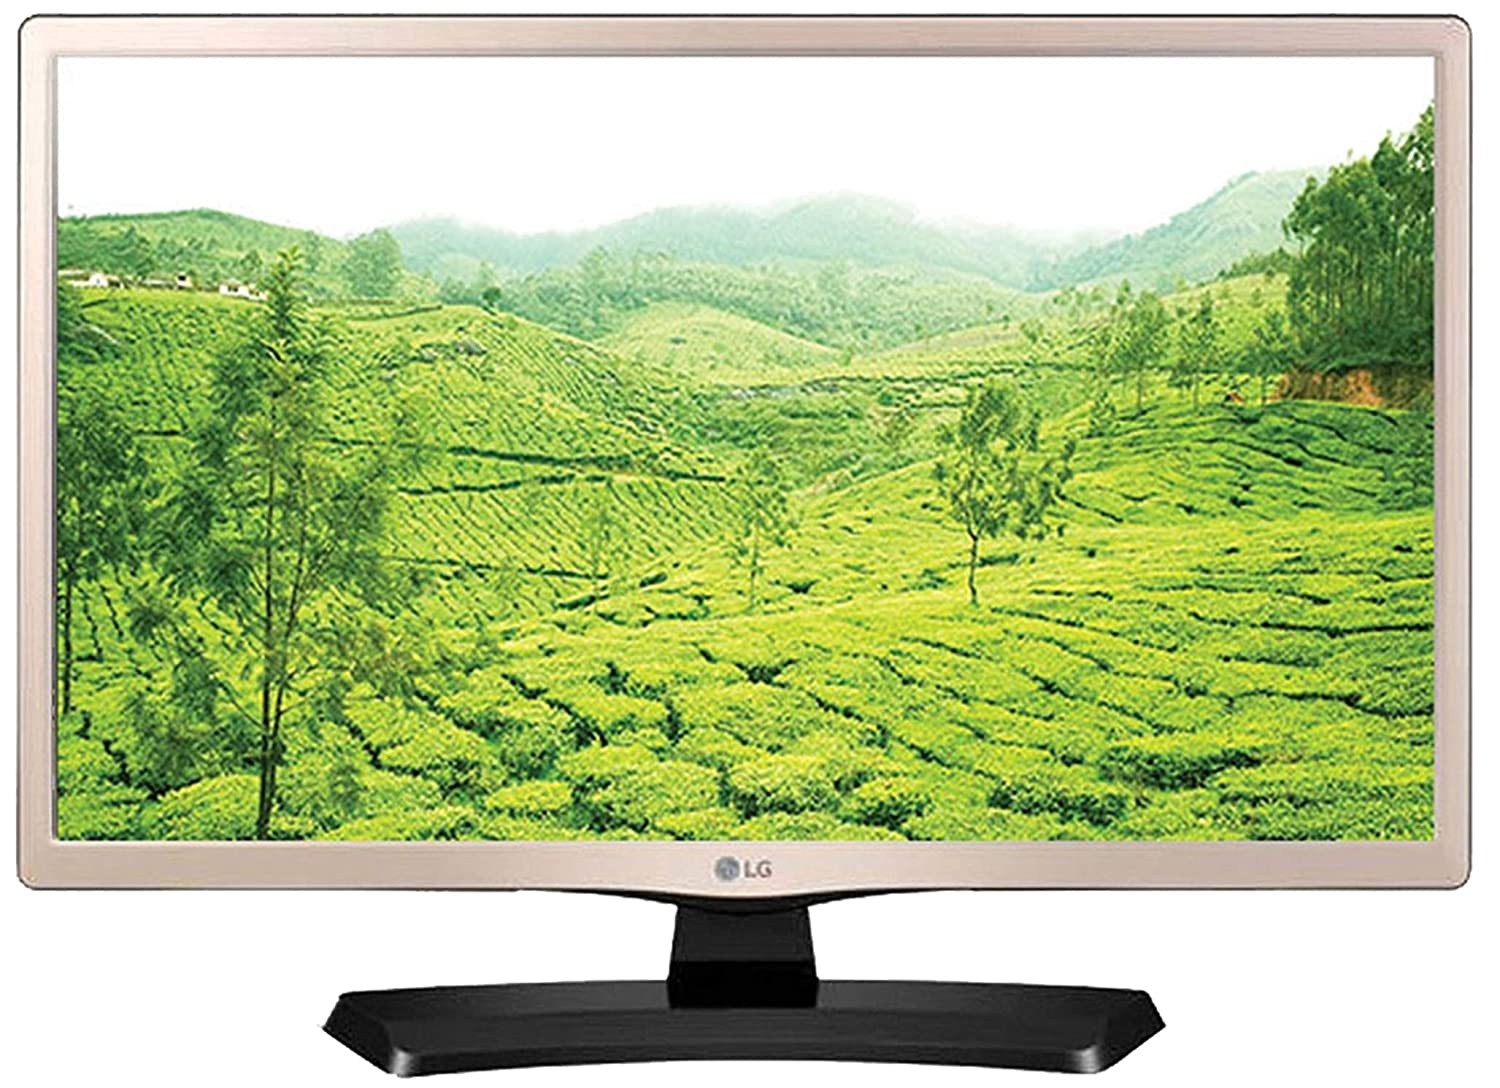 LG 60 cm (24 Inches) HD LED TV - Best Online Deals Bridge